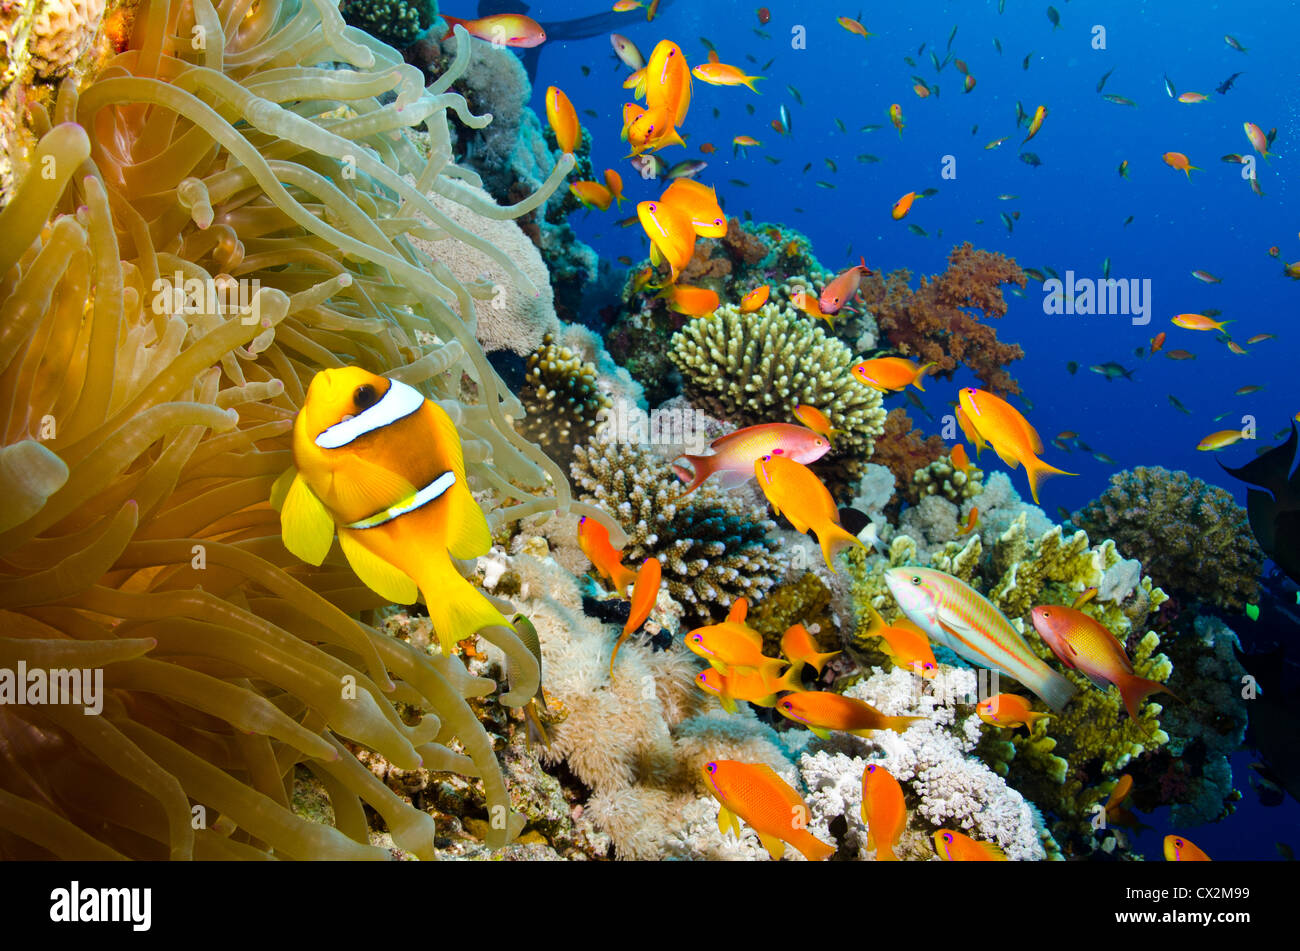 Los arrecifes de coral, Mar Rojo, Egipto, submarinas, arrecifes tropicales, arrecifes de coral, azul agua, peces, anémonas, el océano, el mar, la vida marina, agua clara Foto de stock